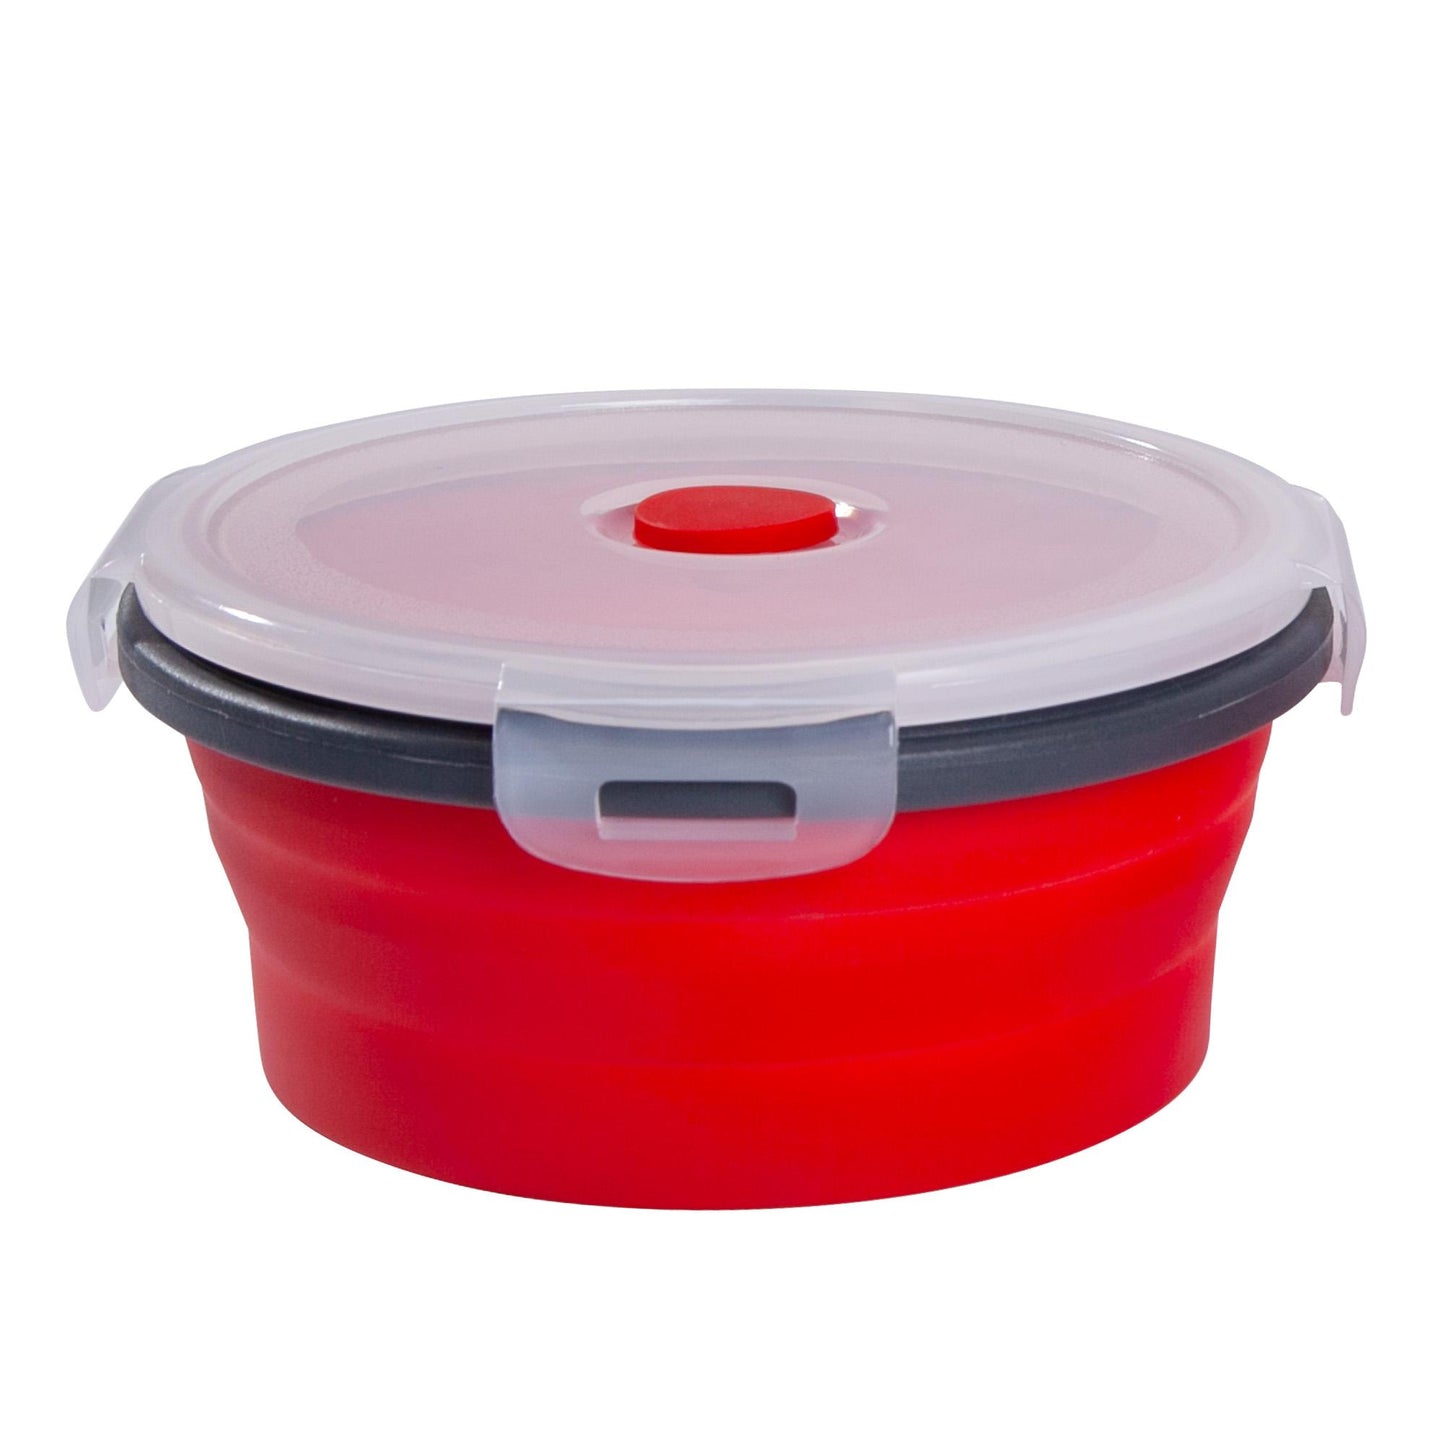 Mixcover opvouwbare cerebrale dosis met deksel gemaakt van siliconen bentobox lunchbox lunchbox picnick camping kom bpa-vrije ruimte besparen 500 ml rood rood